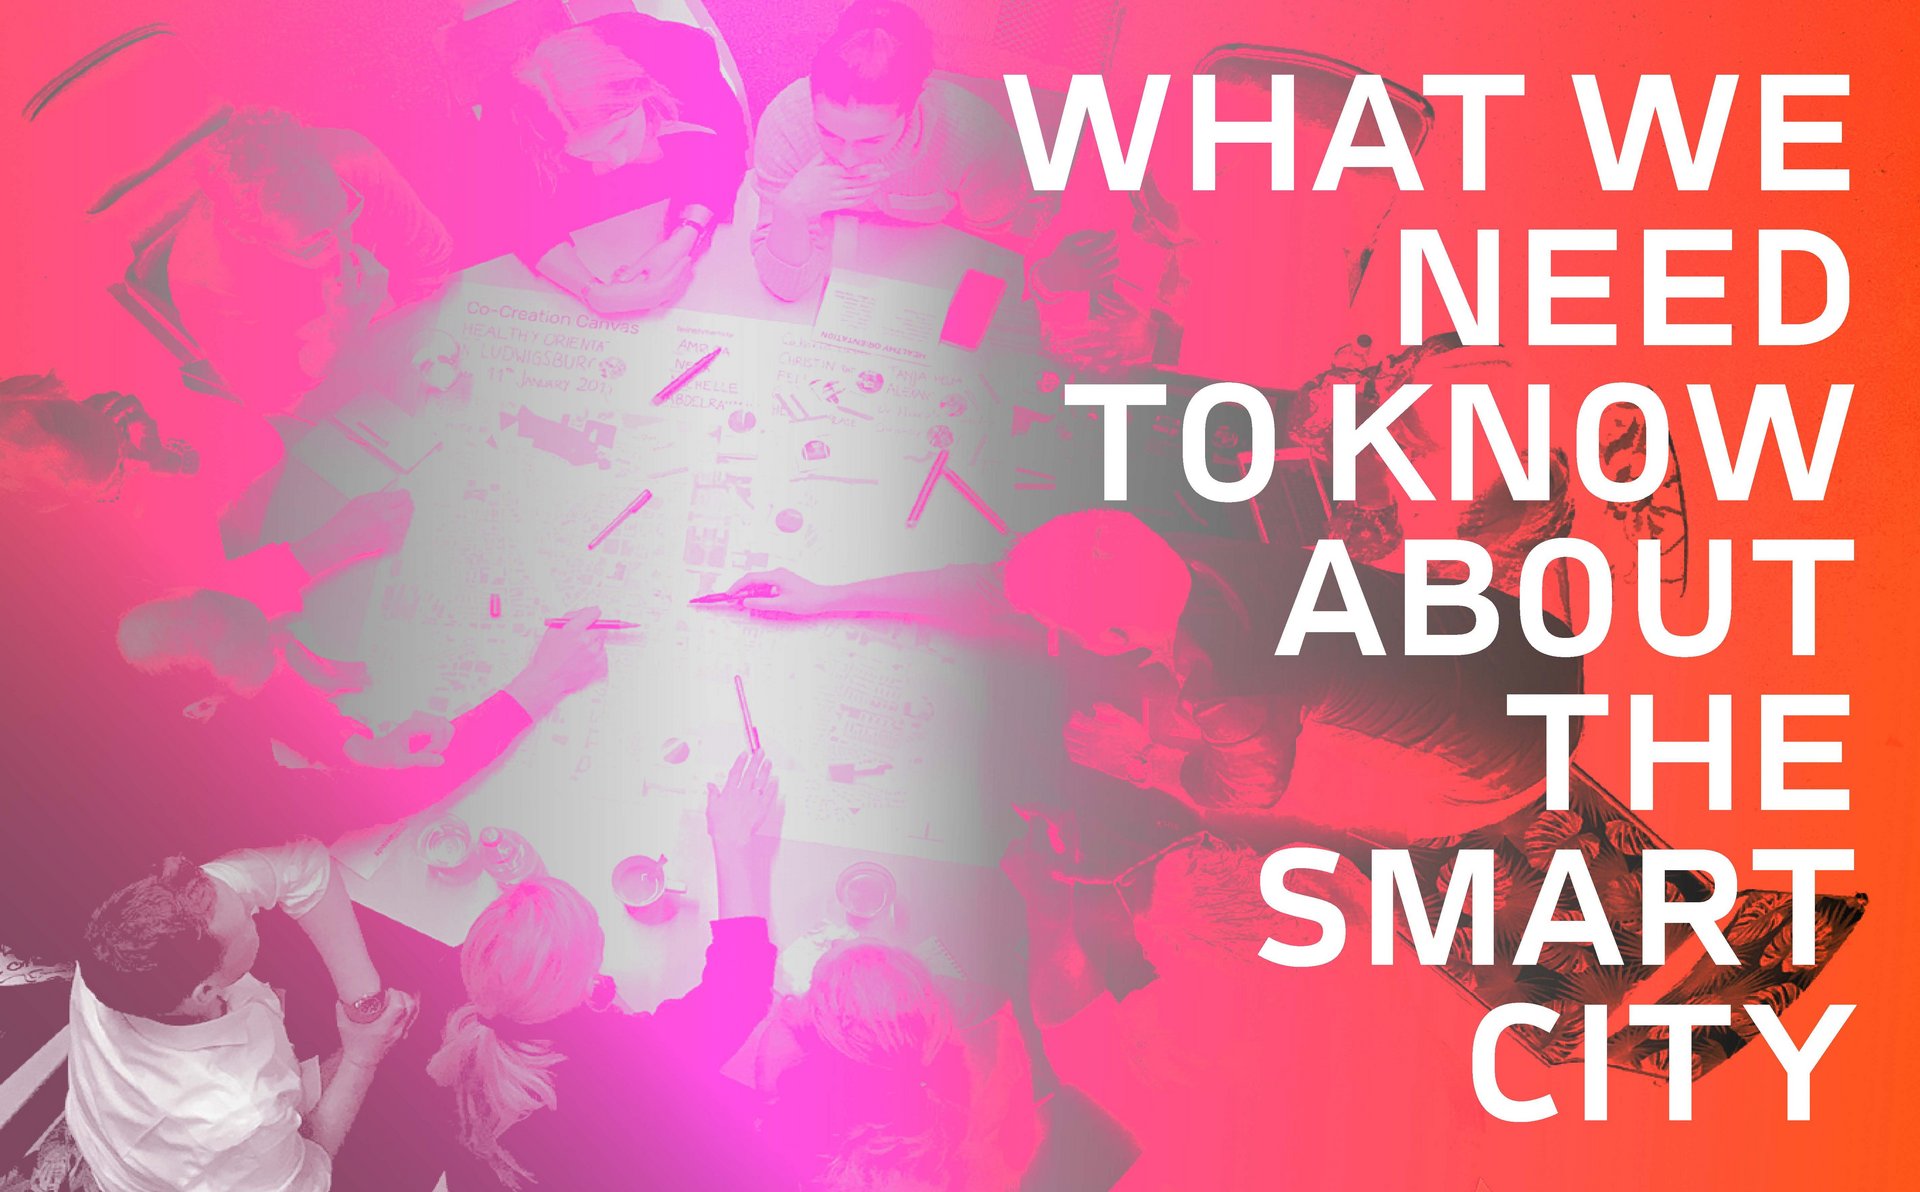 Ankündigungsgrafik für das Symposium "Was wir über Smart City wisse müssen"